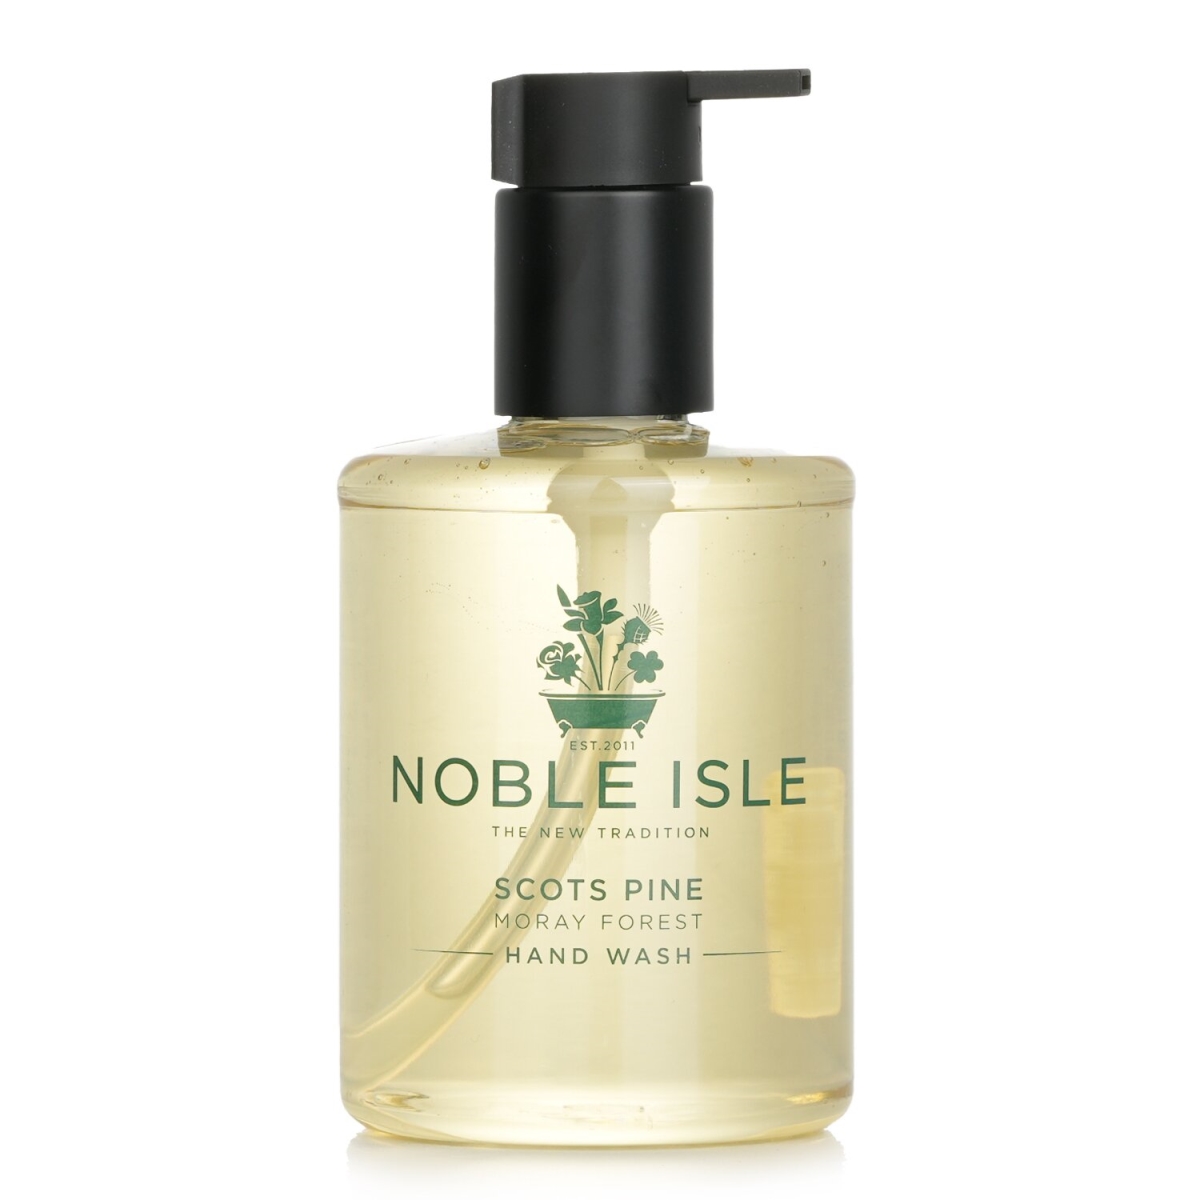 noble isle 284470 250 ml Scots Pine Hand Wash